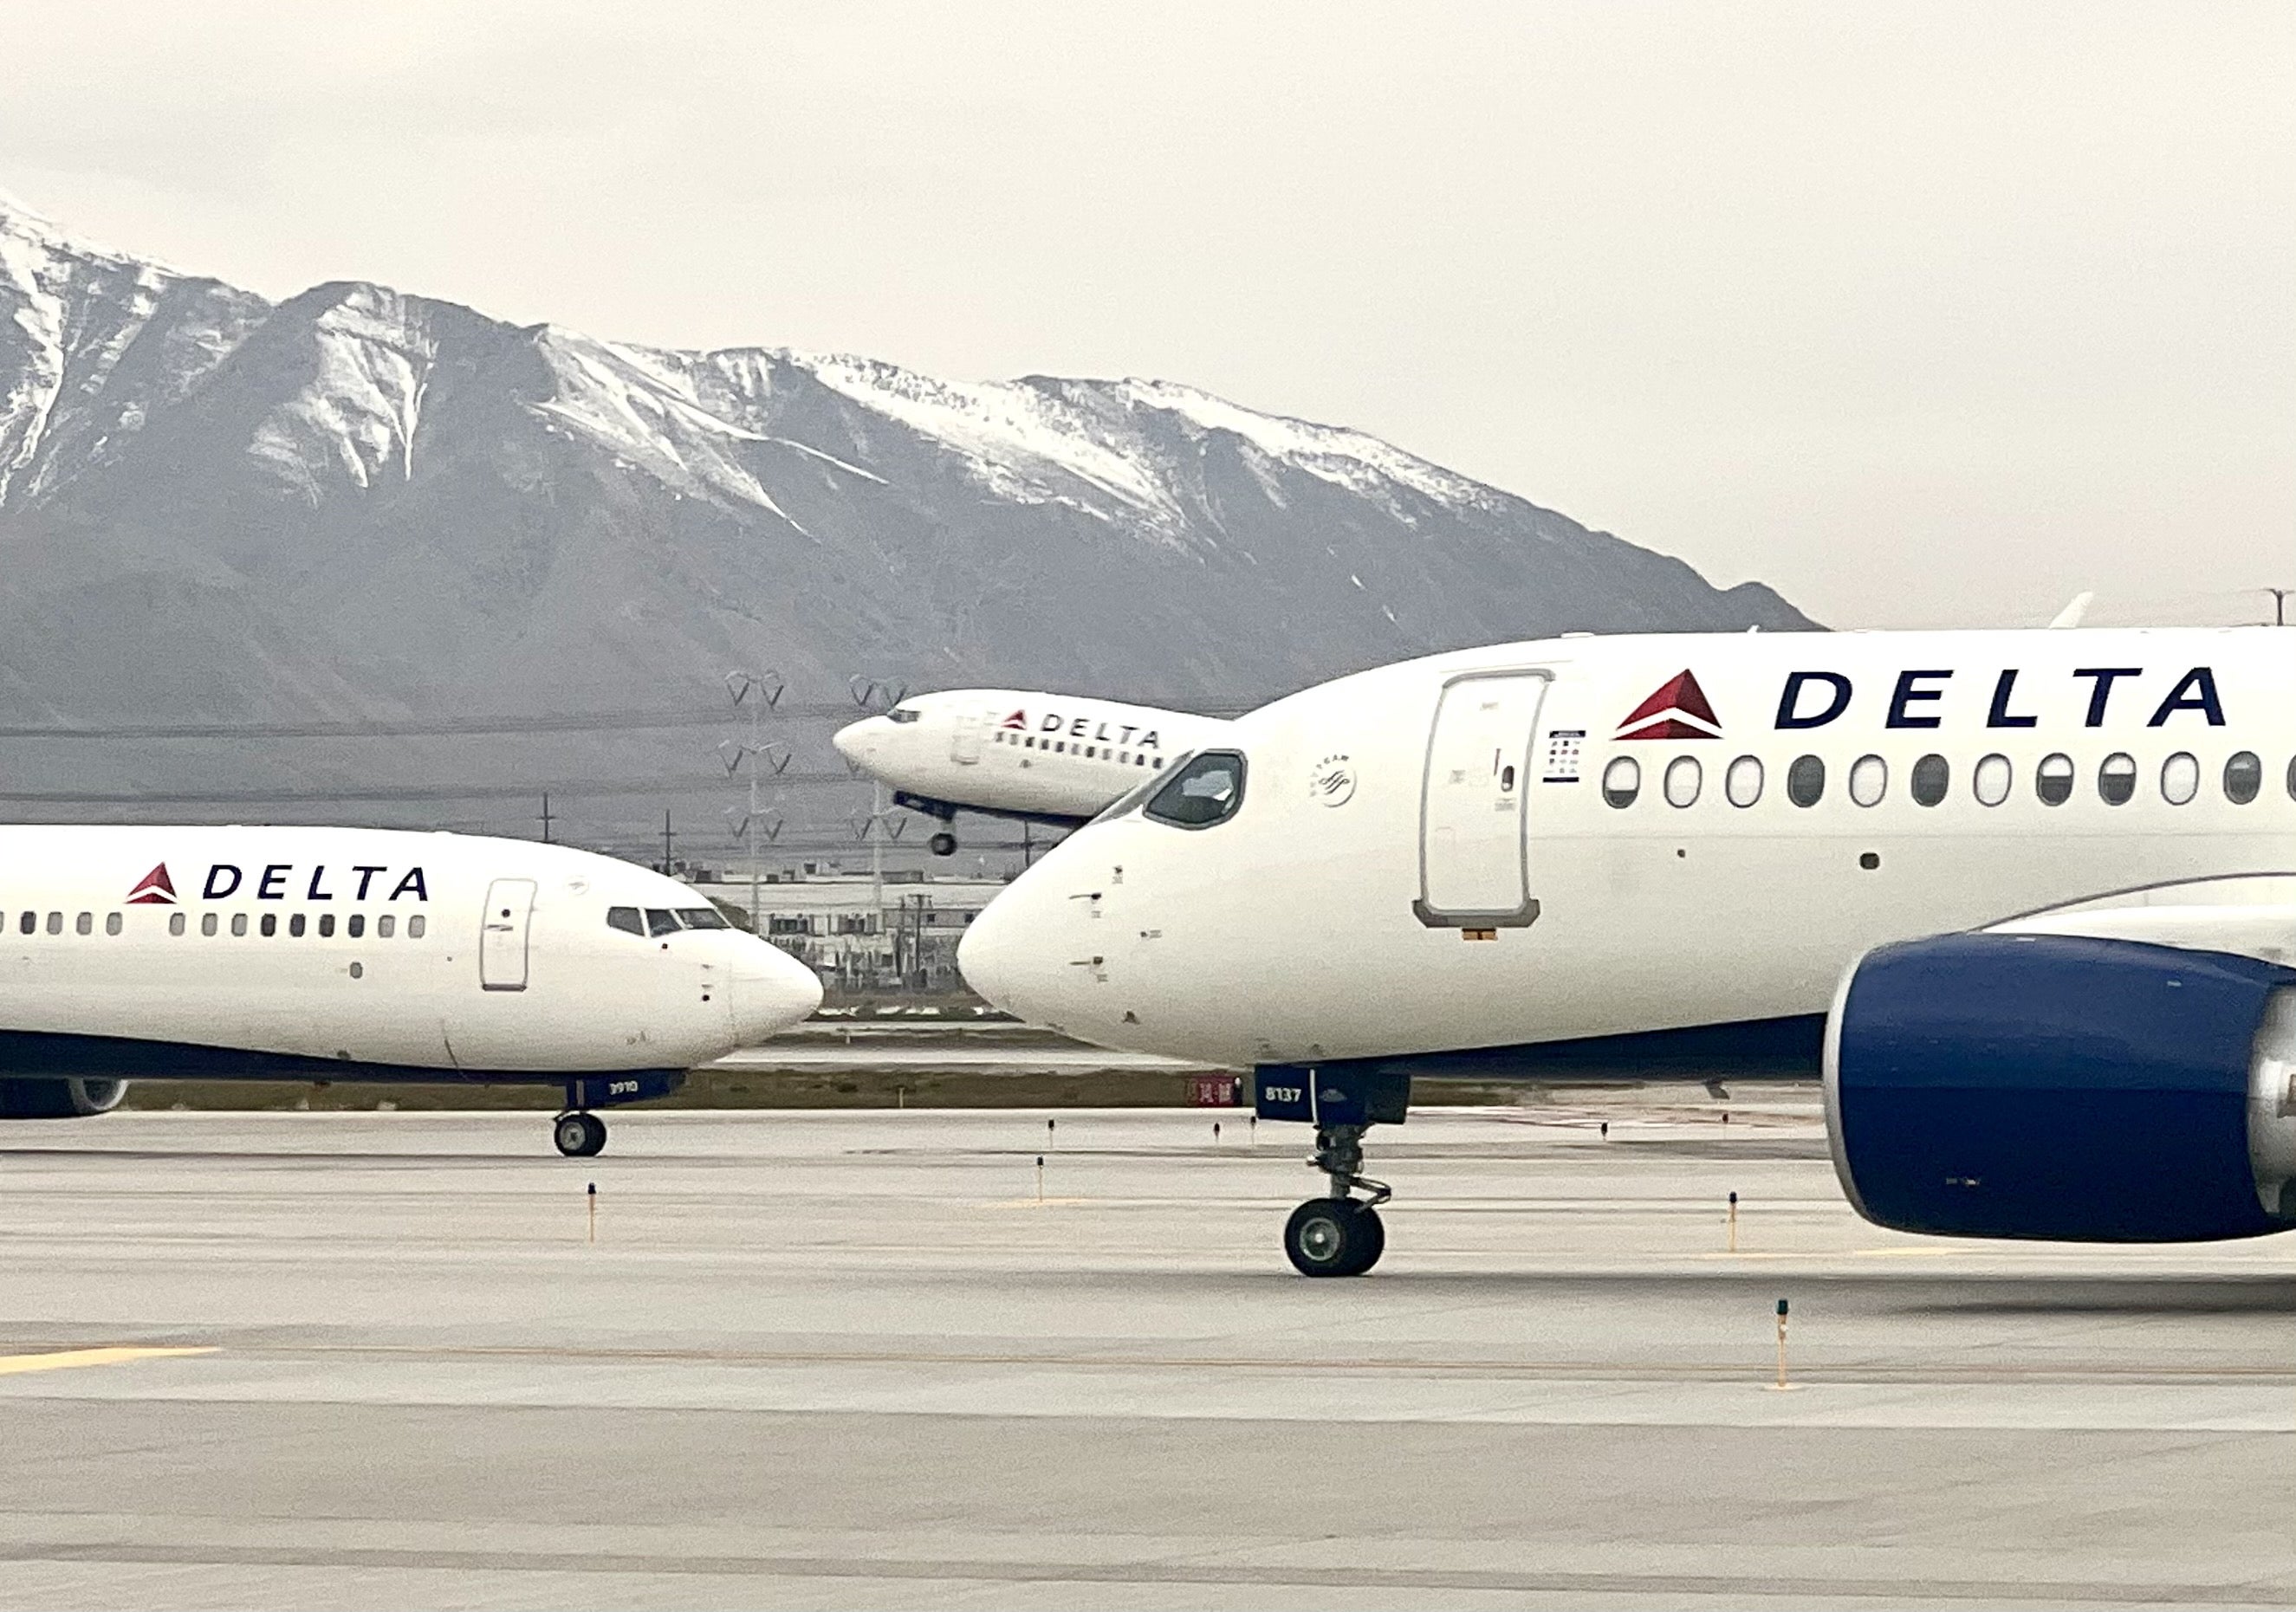 Delta jets